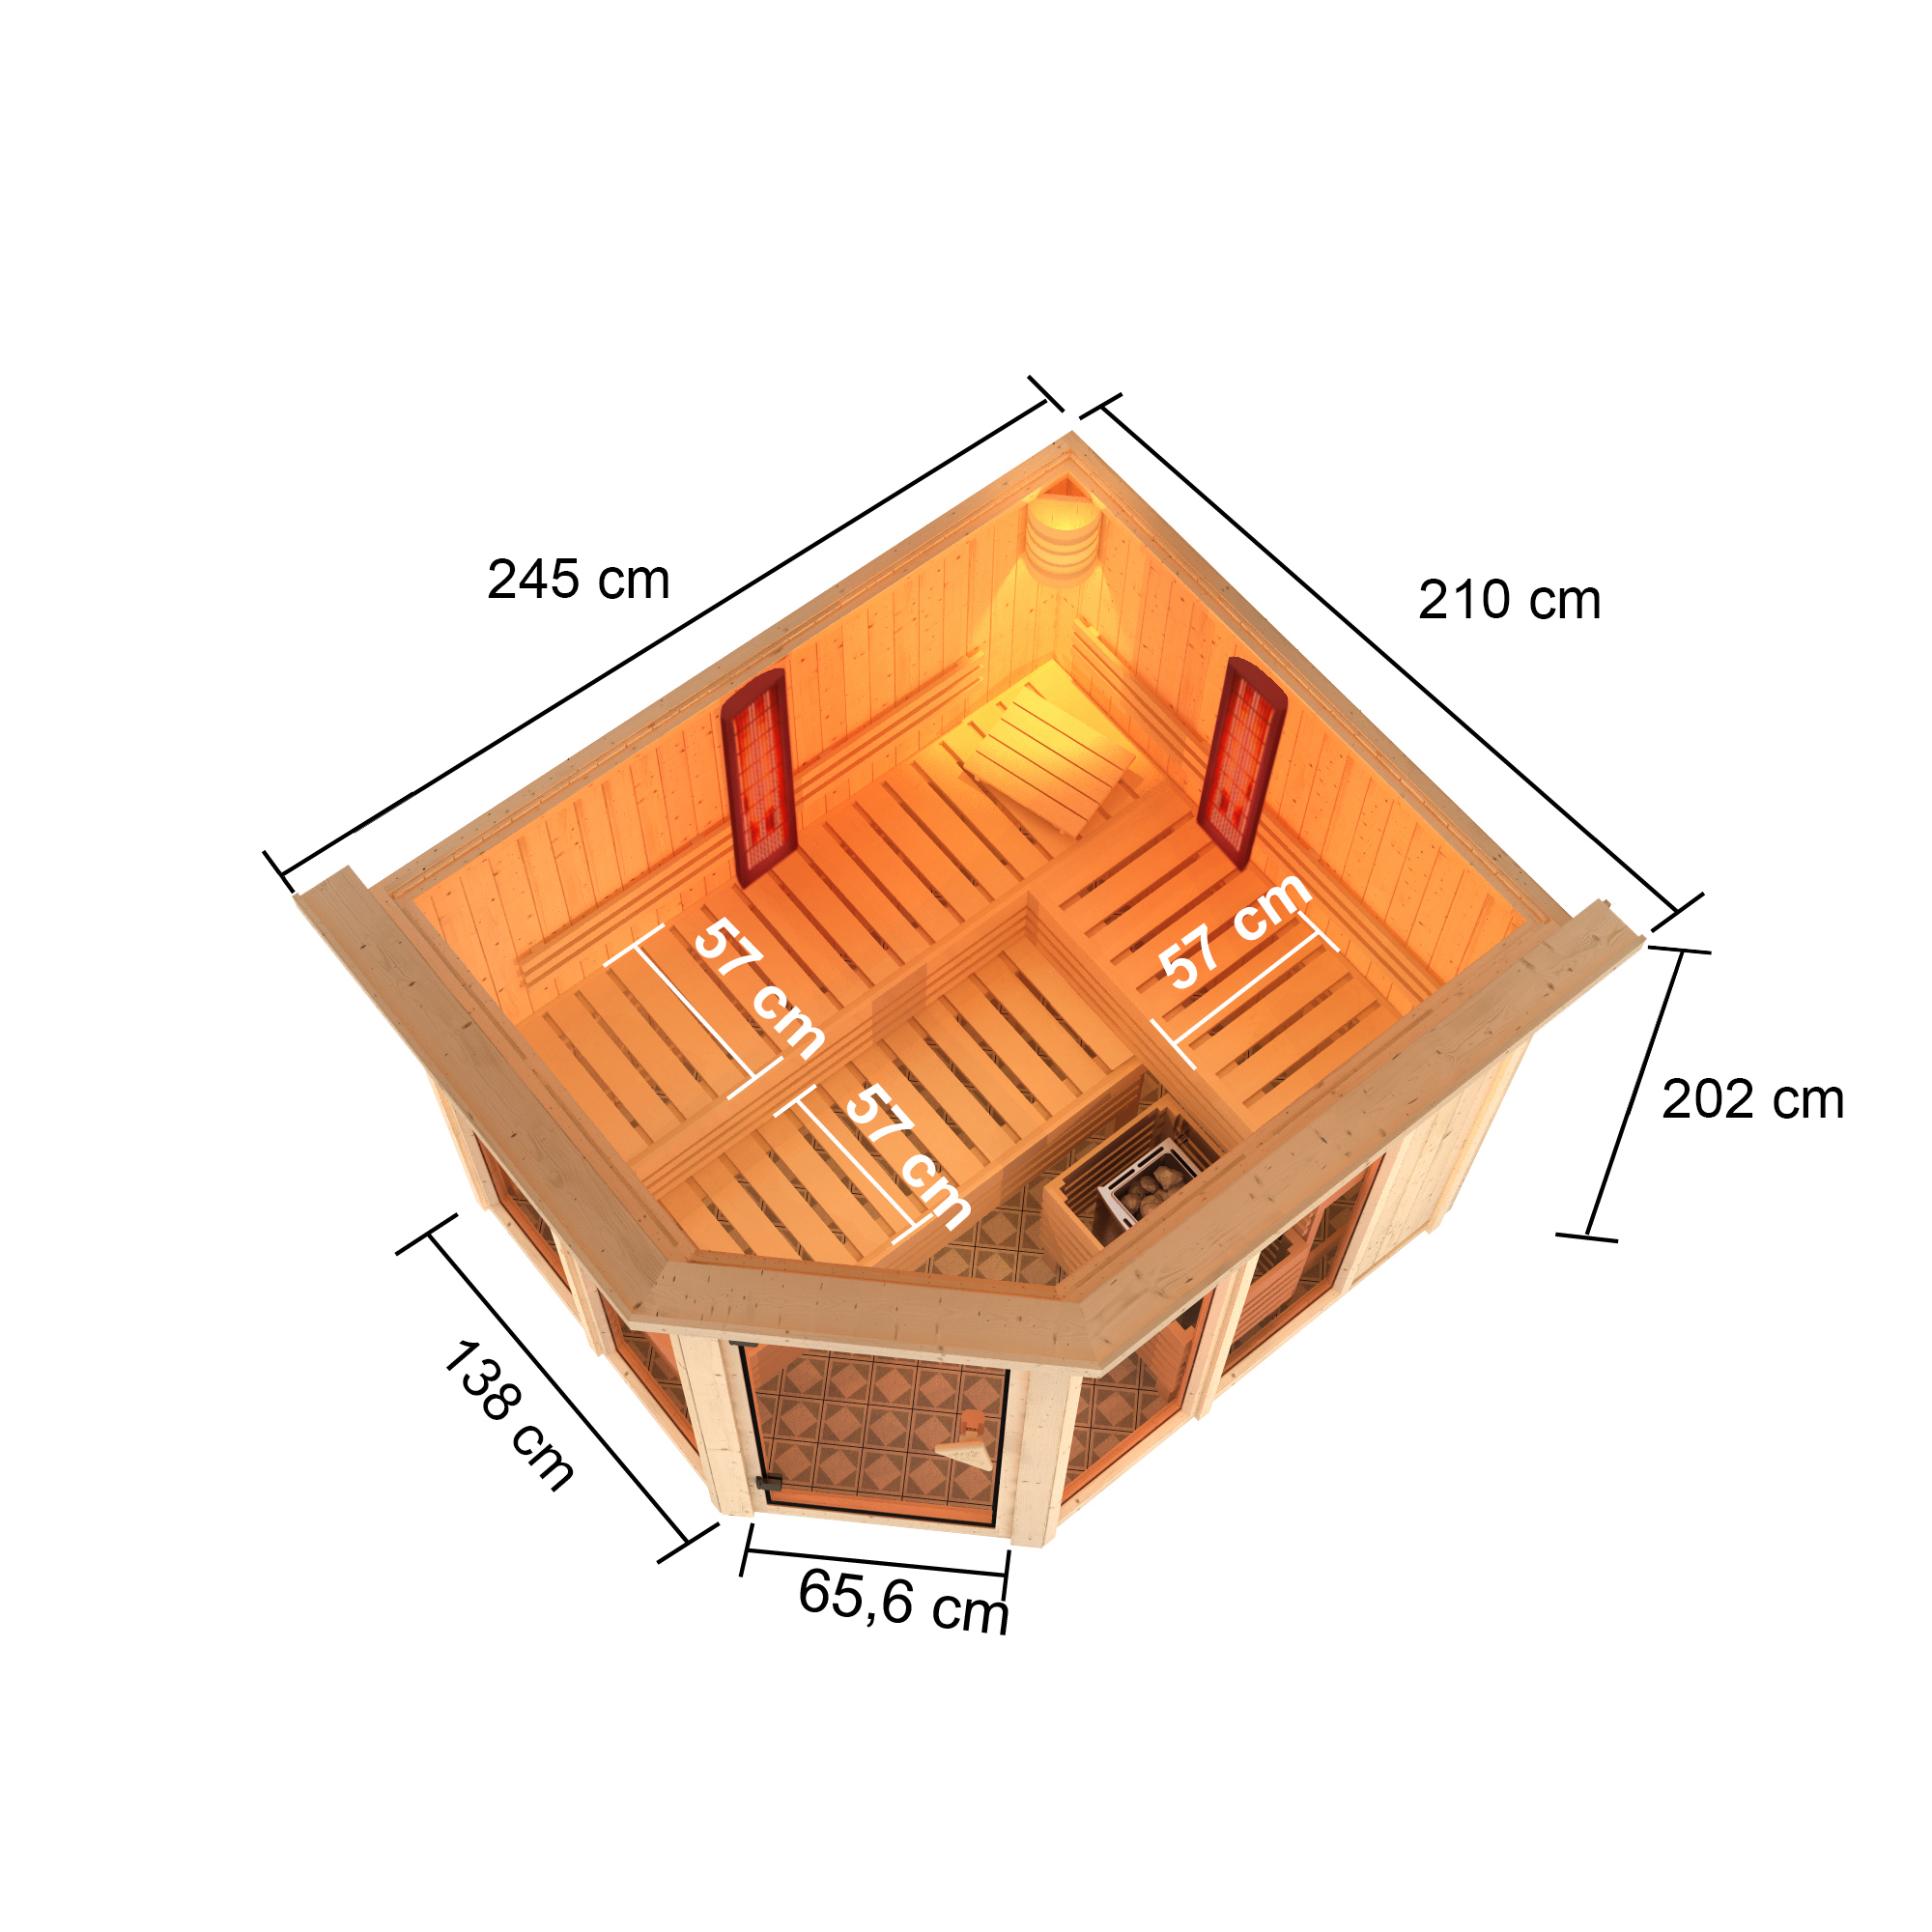 Infrarotkabine 'Alejandra' naturbelassen mit Kranz und bronzierter Tür 9 kW Ofen externe Steuerung 245 x 210 x 202 cm + product picture